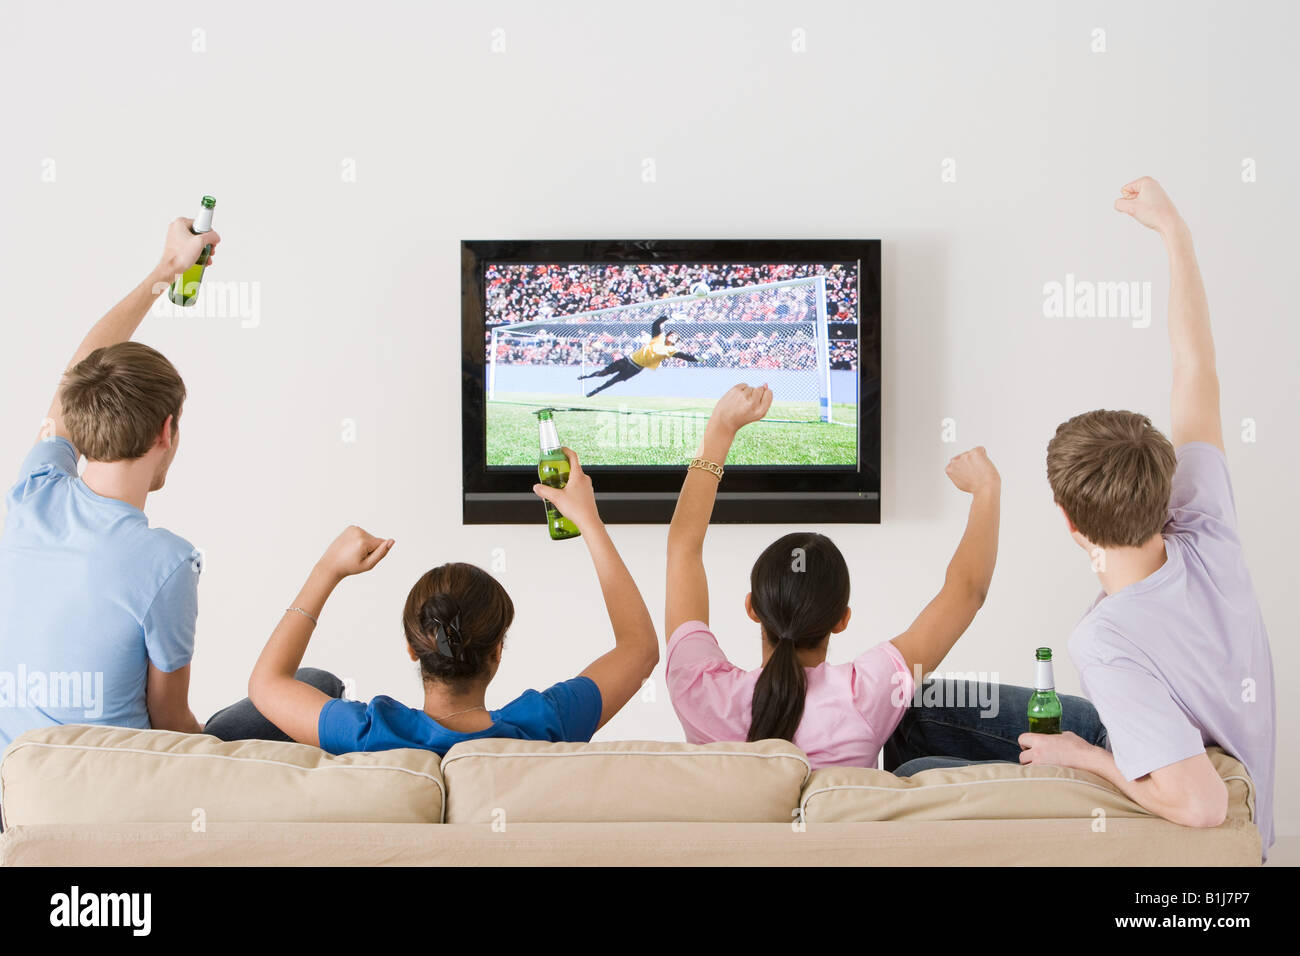 Freunde, Fußball auf dem tv gucken Stockfotografie - Alamy